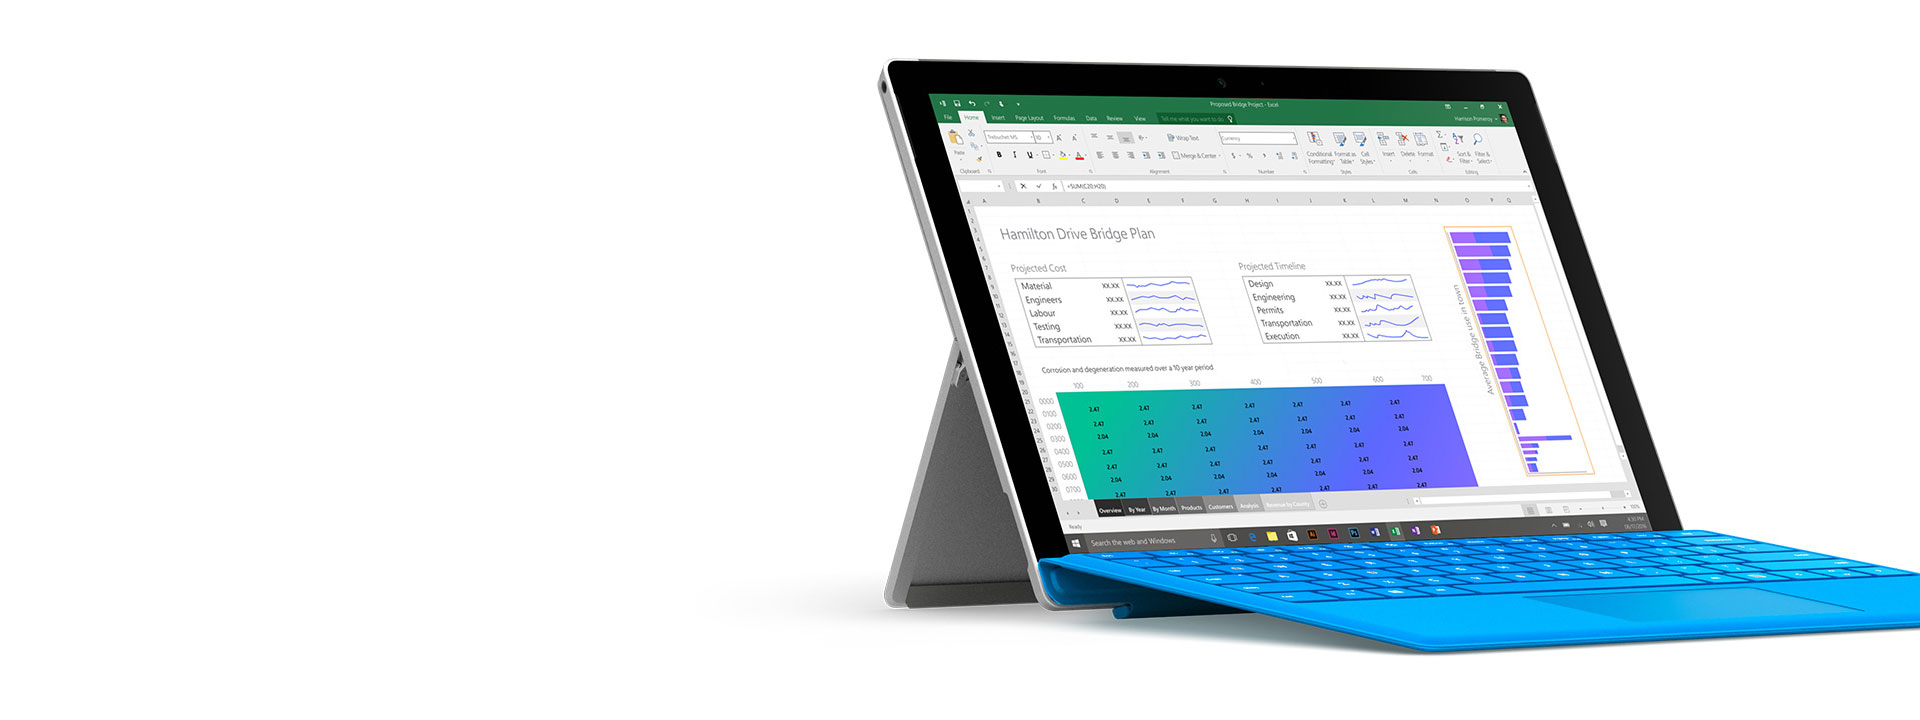 Microsoft Surface Pro 4 を購入する | タブレットやノート PC としてご利用いただけます